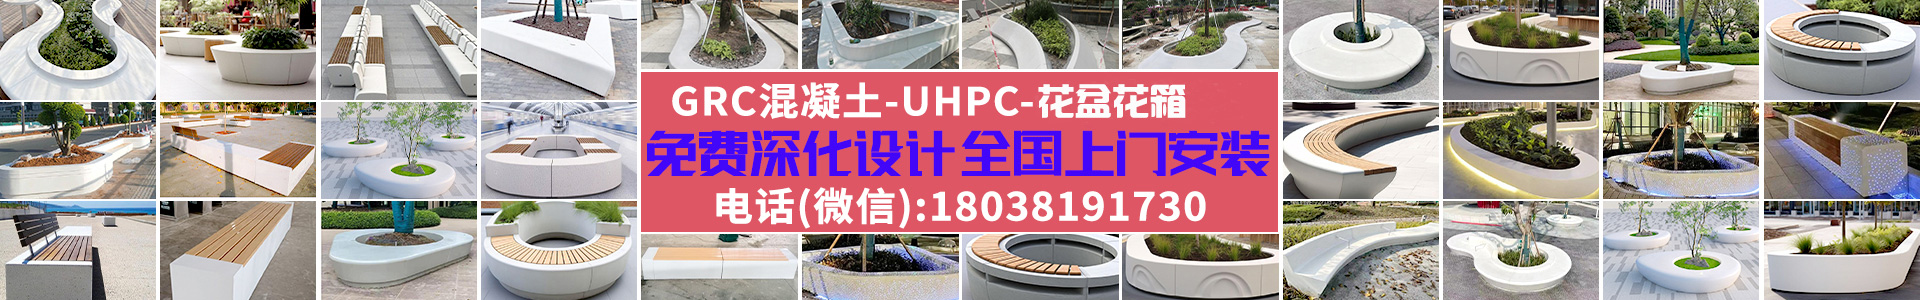 GRC花盆UHPC混凝土圆形景观花箱